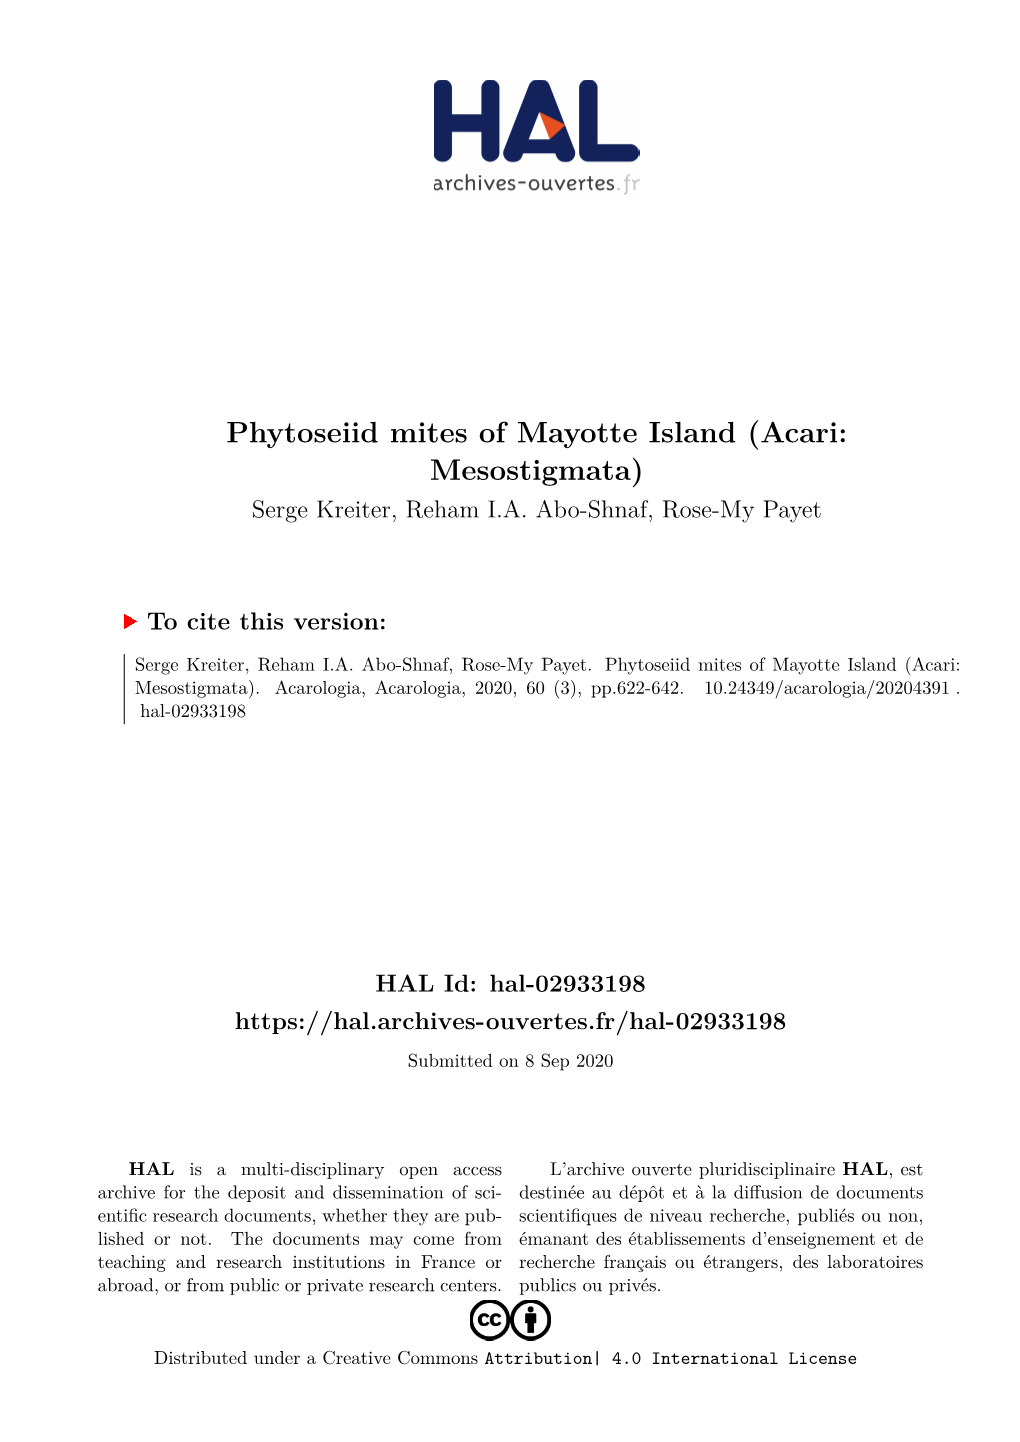 Phytoseiid Mites of Mayotte Island (Acari: Mesostigmata) Serge Kreiter, Reham I.A